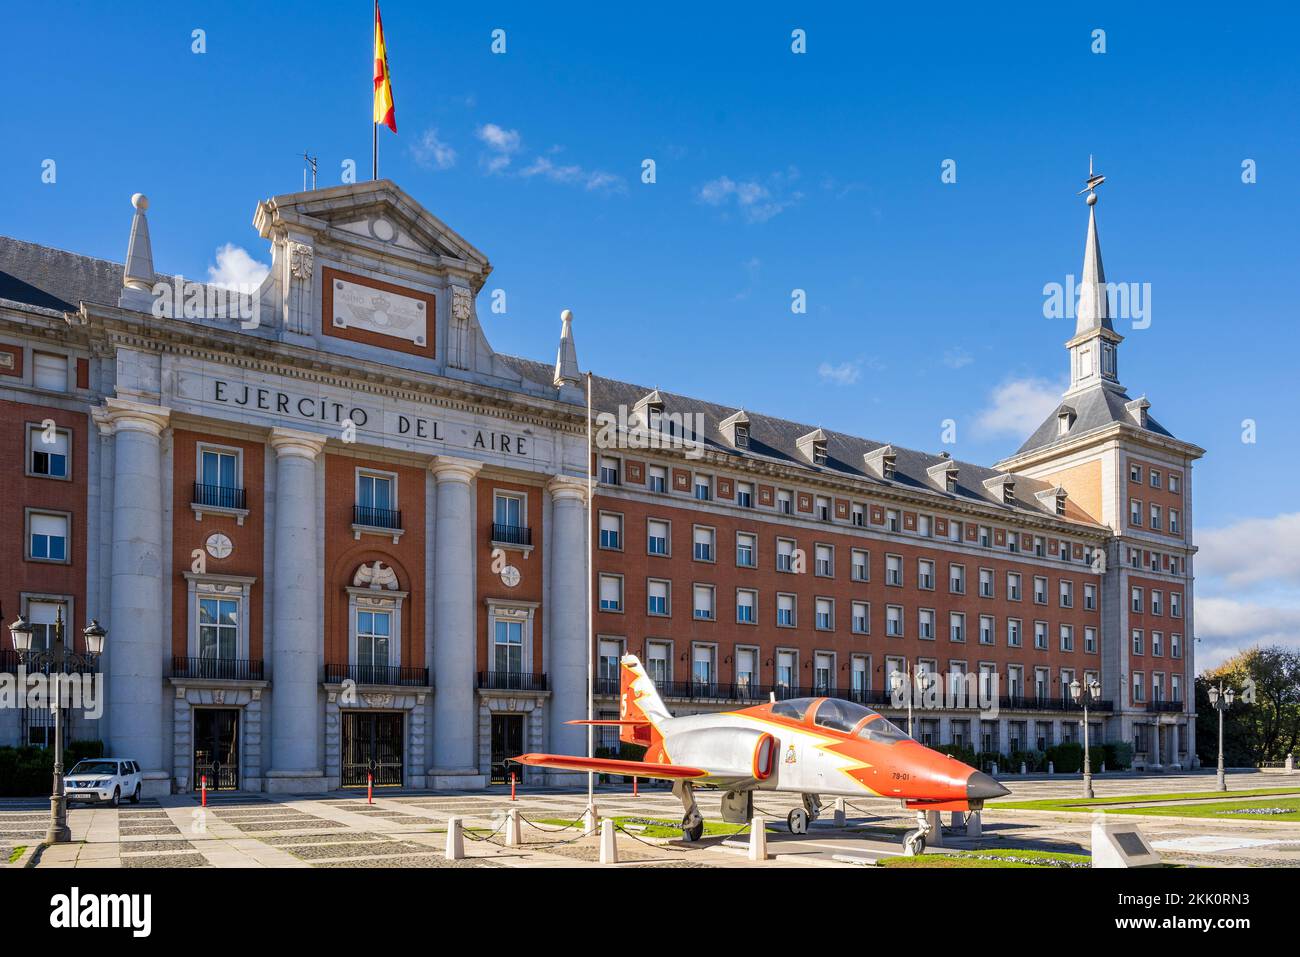 Siège général de la Force aérienne et spatiale (Ministerio del aire) avec les avions C-101 de la Force aérienne espagnole, Madrid (Espagne) Banque D'Images